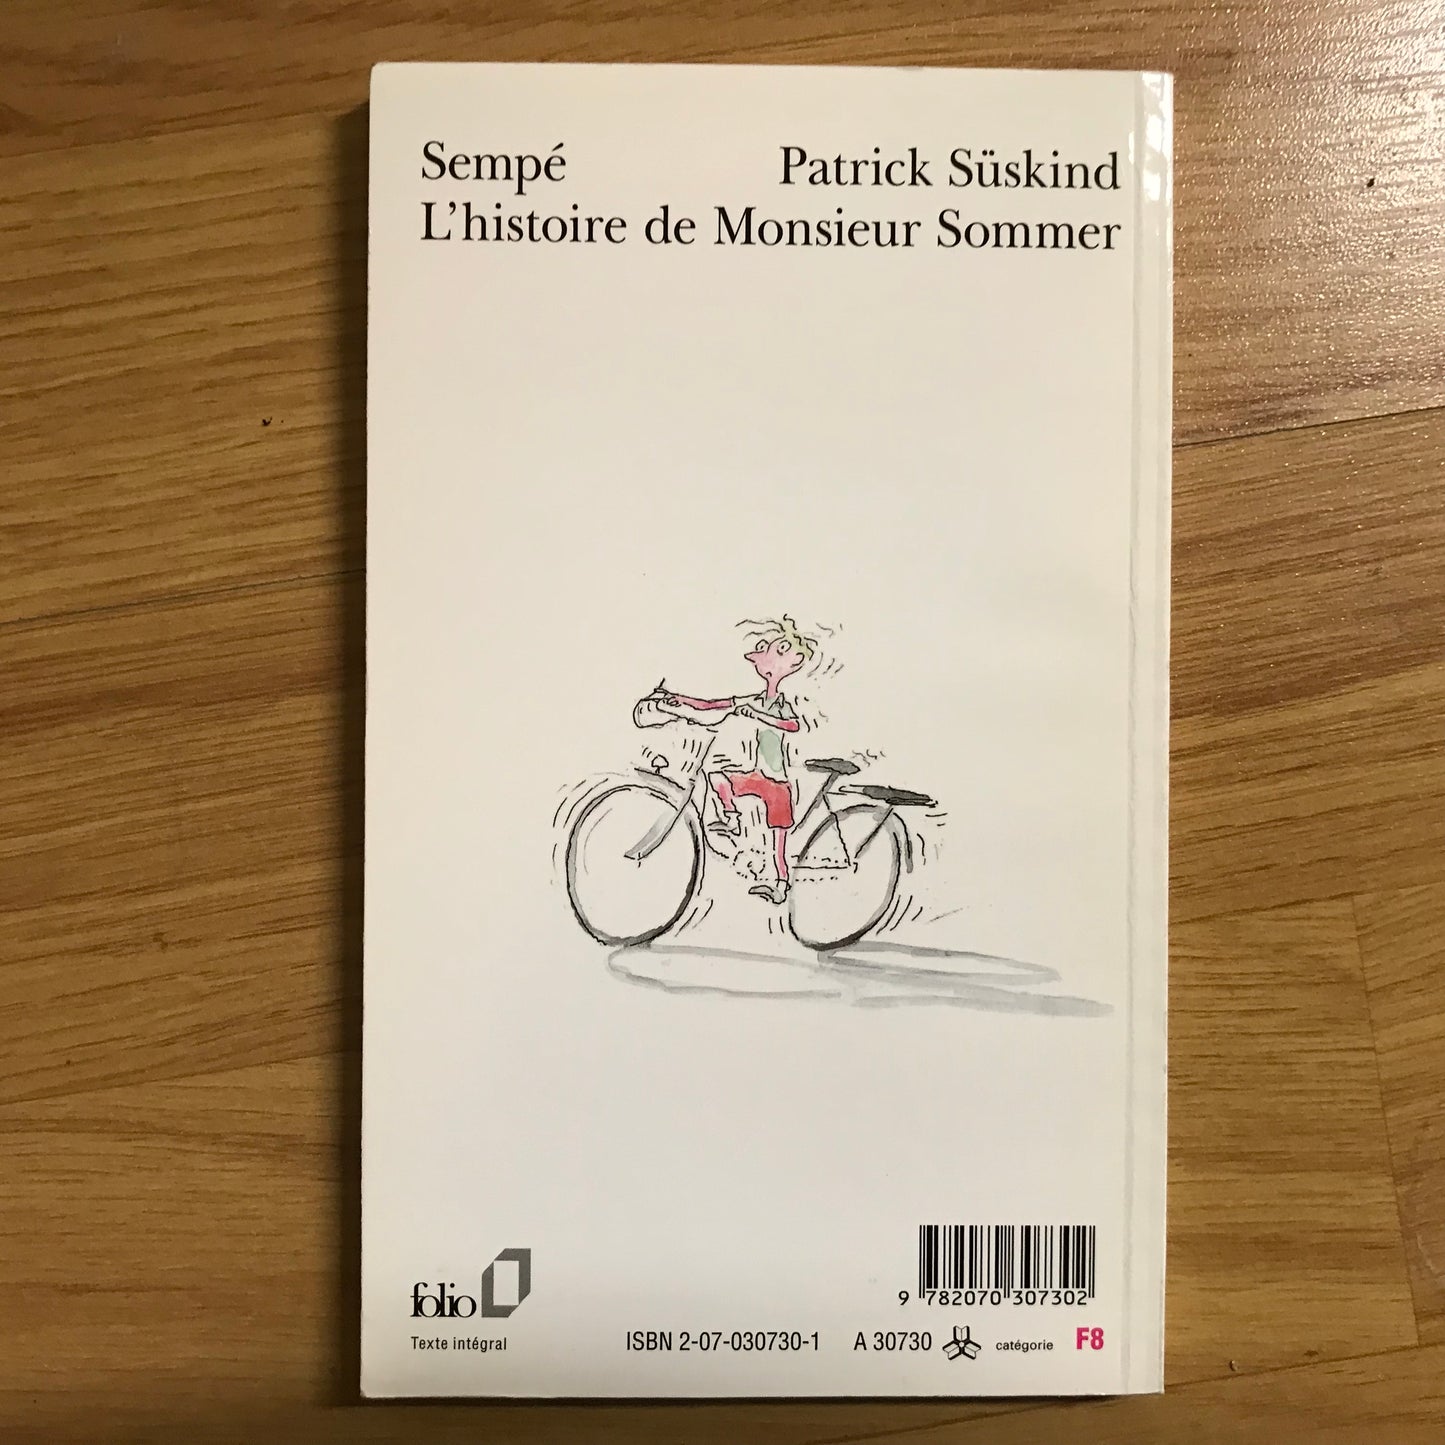 Süskind, Patrick & Sempé - L’histoire de Monsieur Sommer